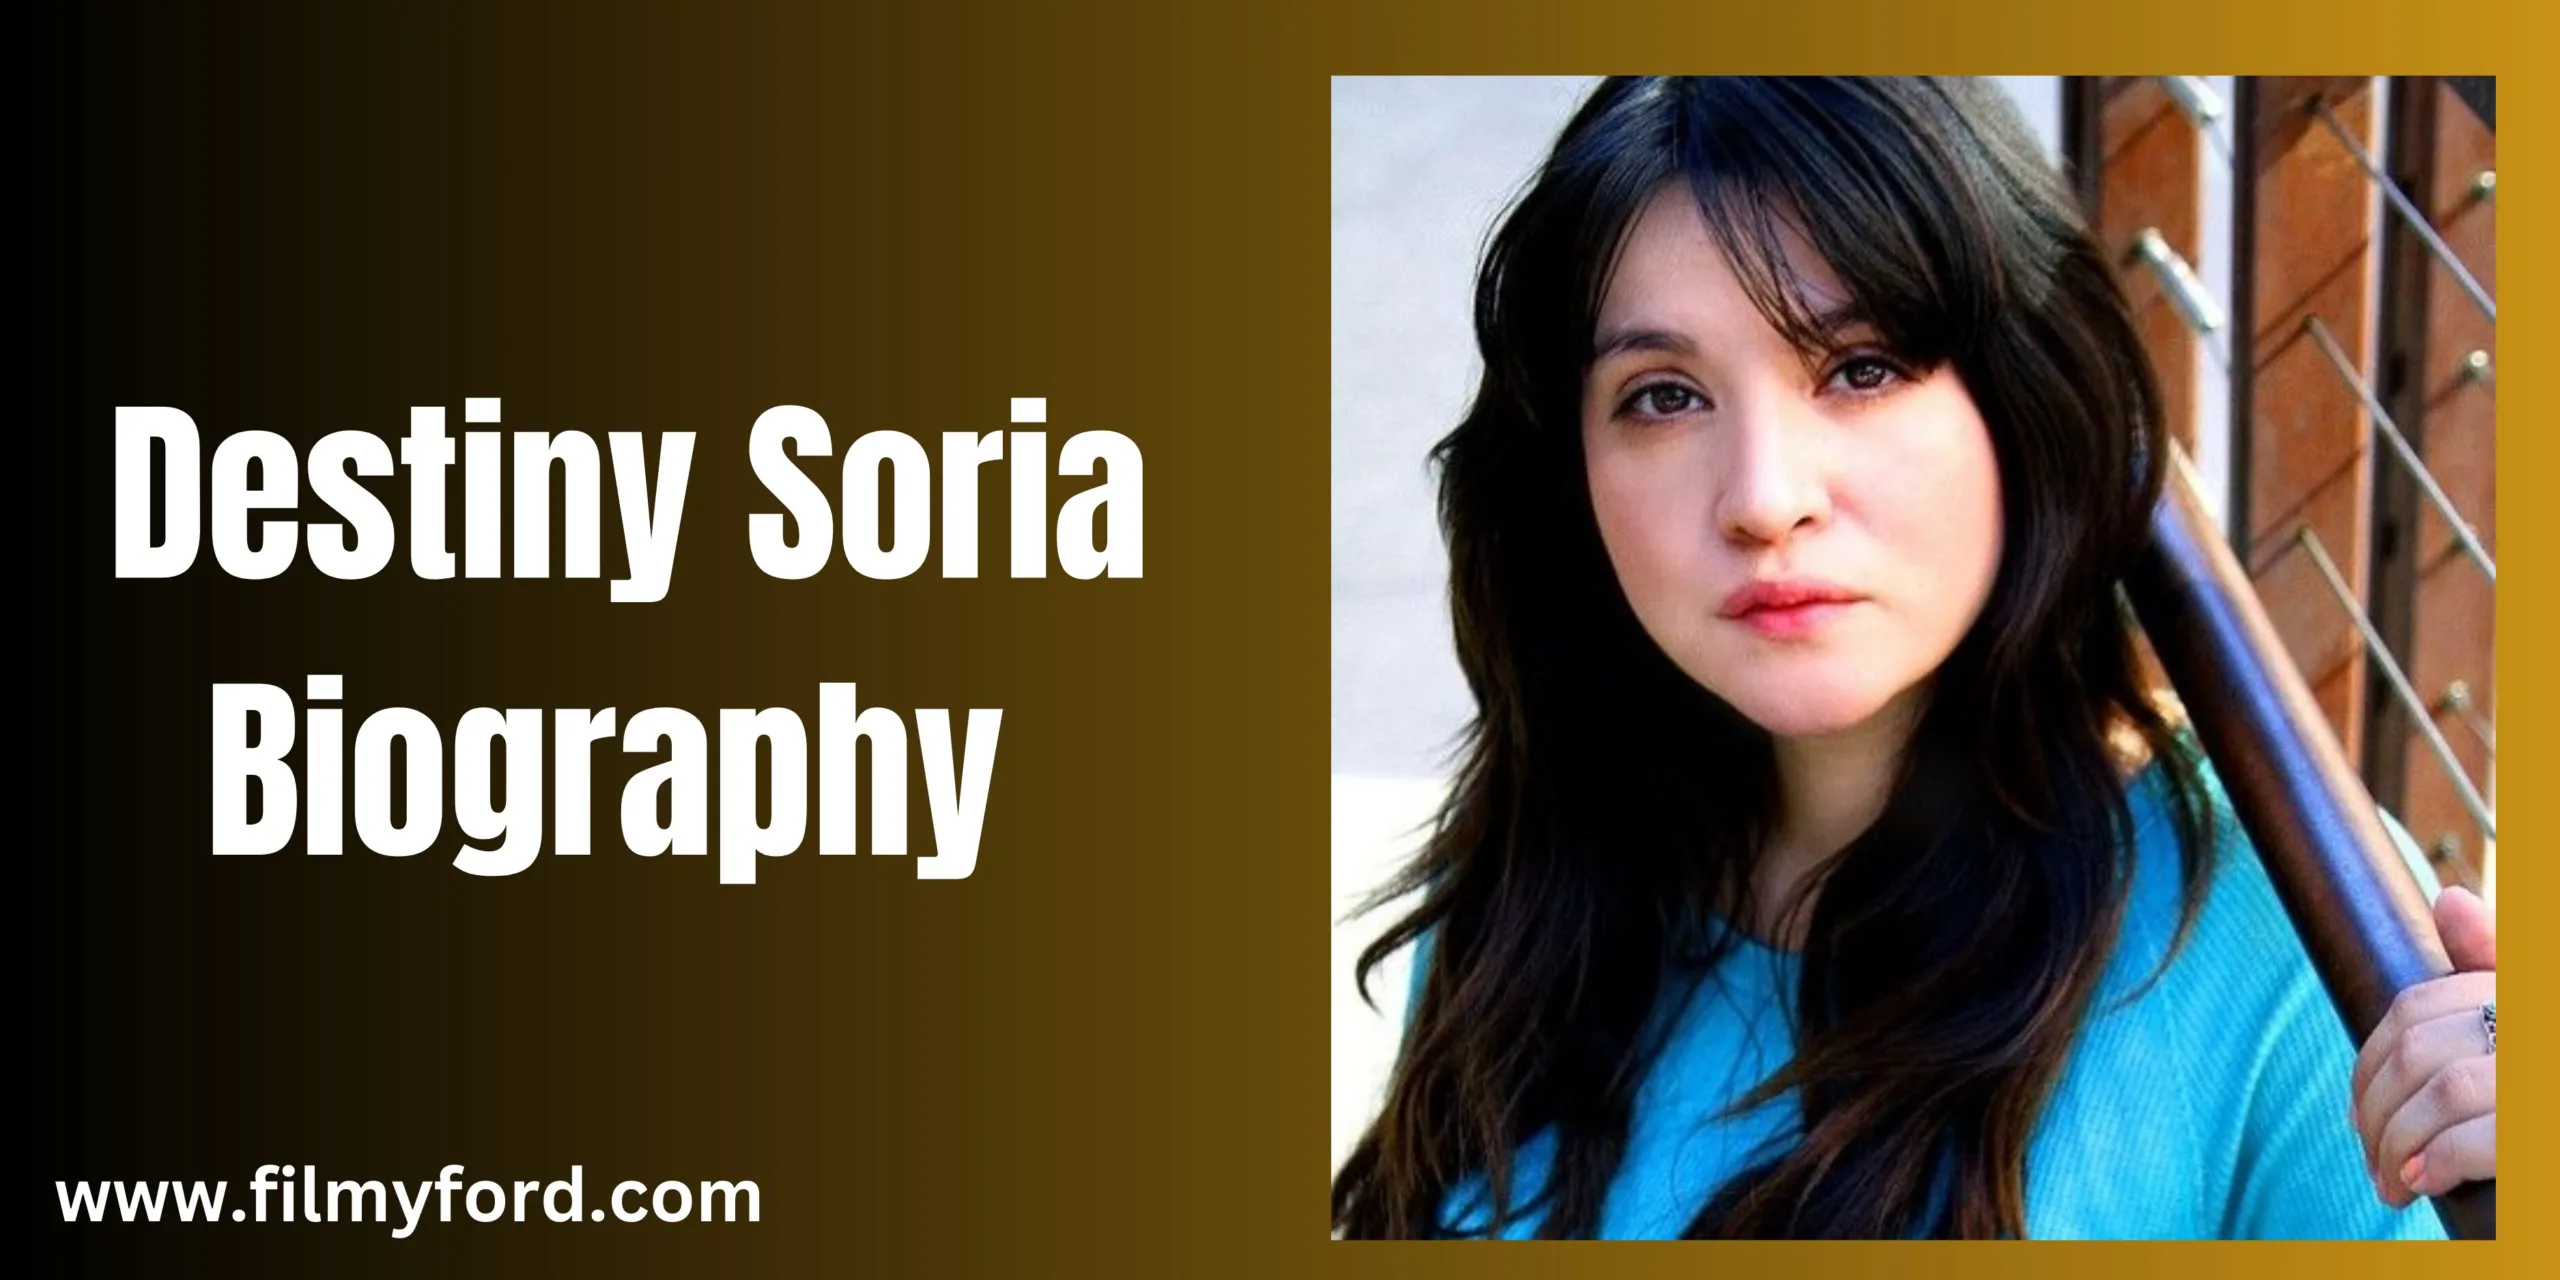 Destiny Soria Biography